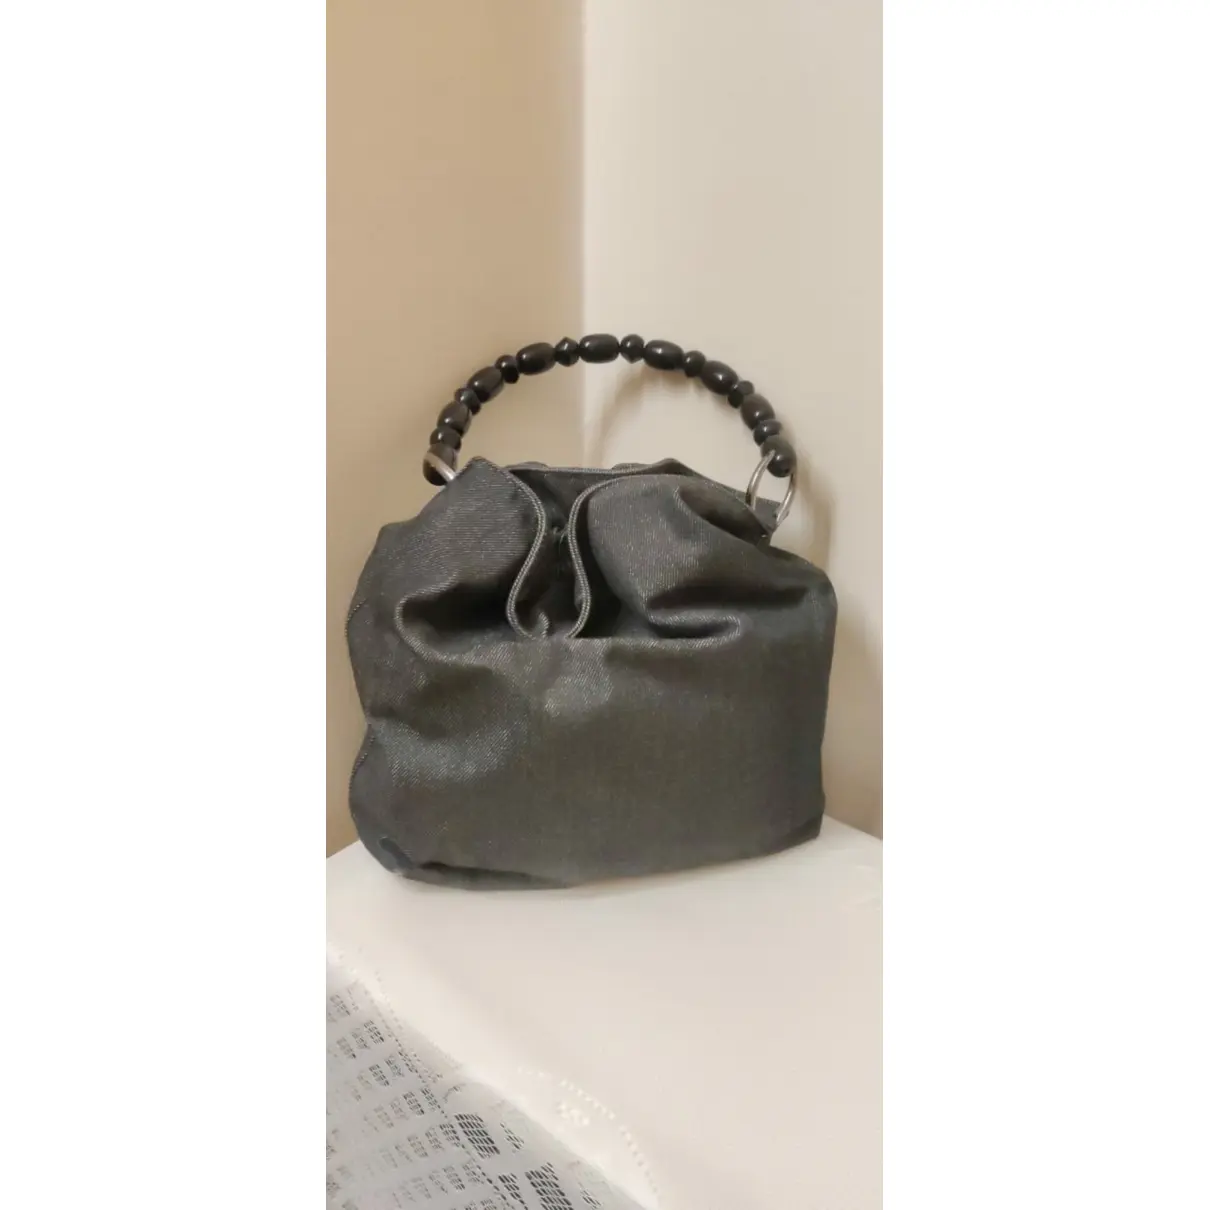 Buy Dior Malice handbag online - Vintage